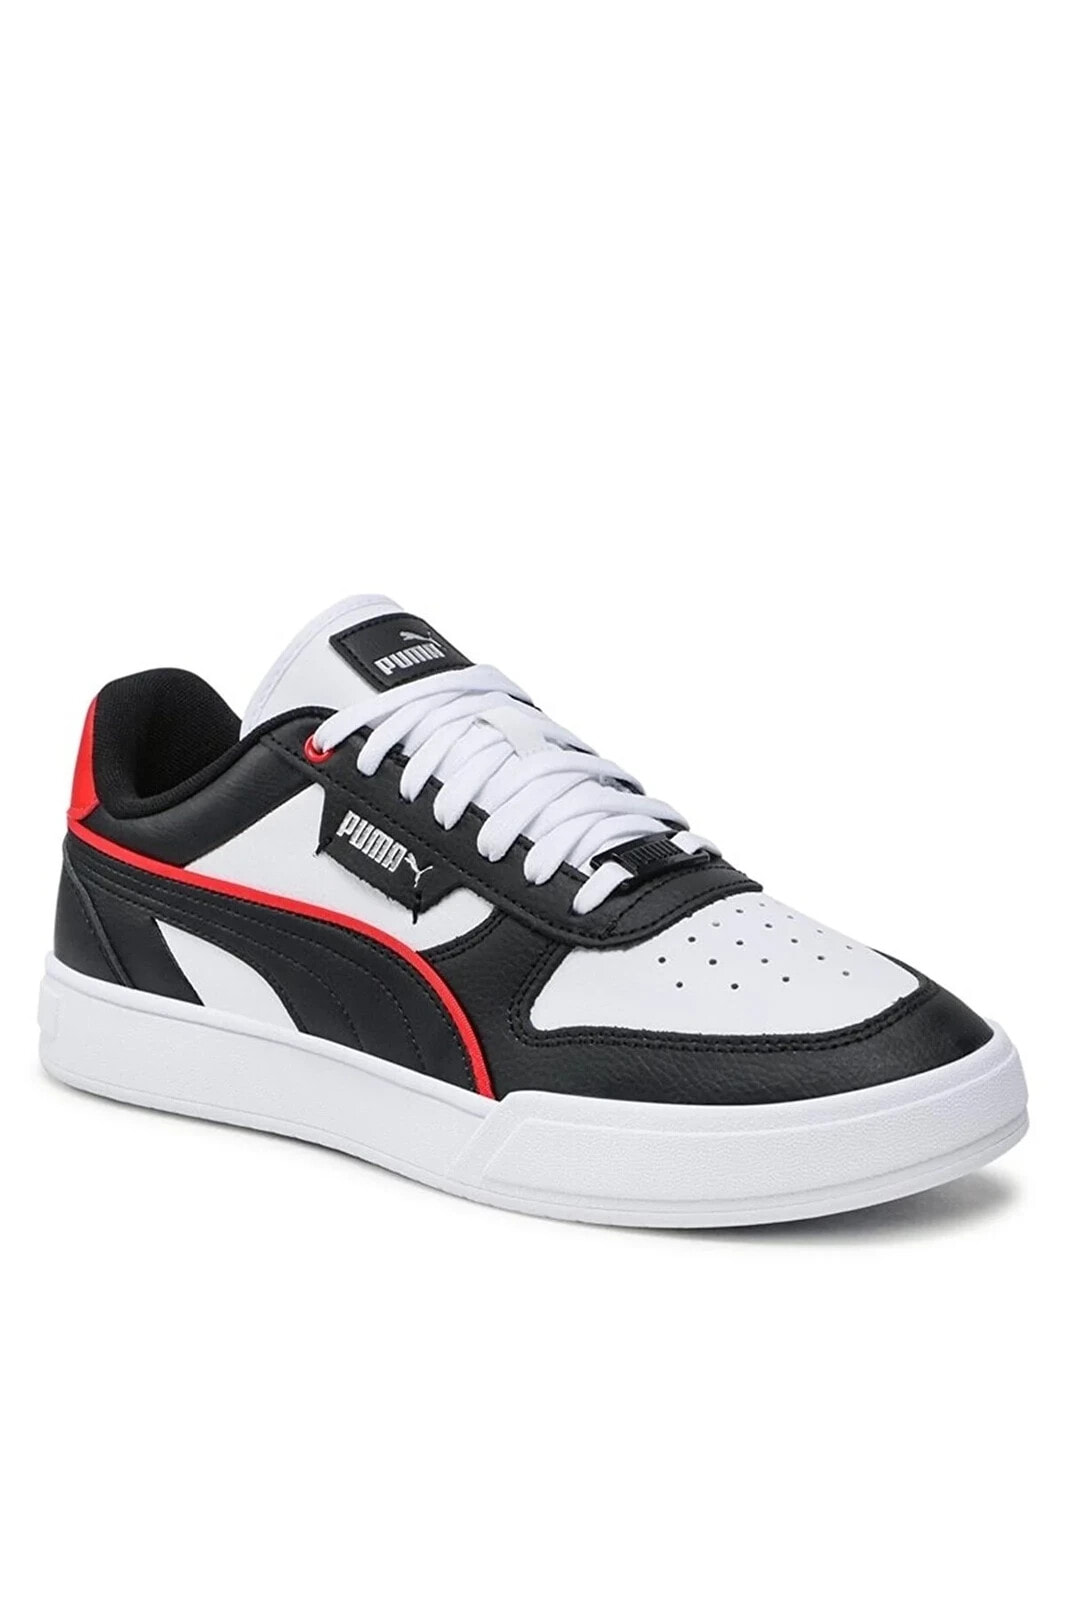 Caven Dime - Erkek Siyah-beyaz Spor Ayakkabı - 384953 16